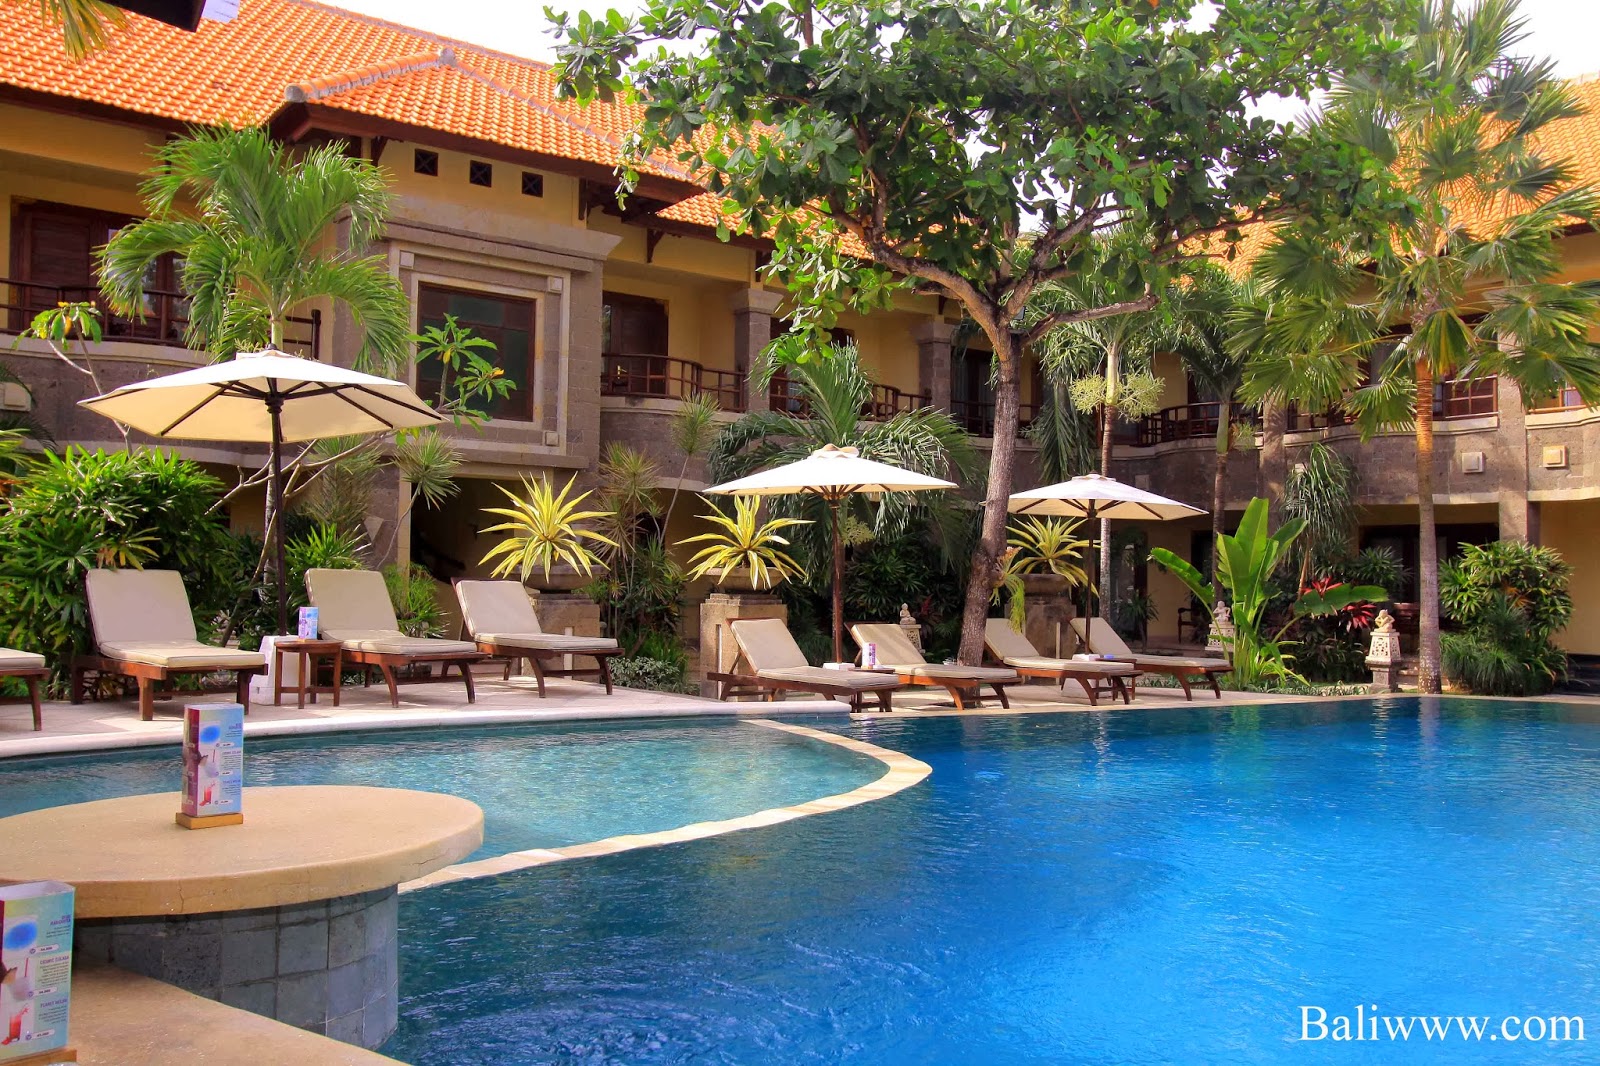 Hotel Murah di Bali | Tempat wisata di Bali